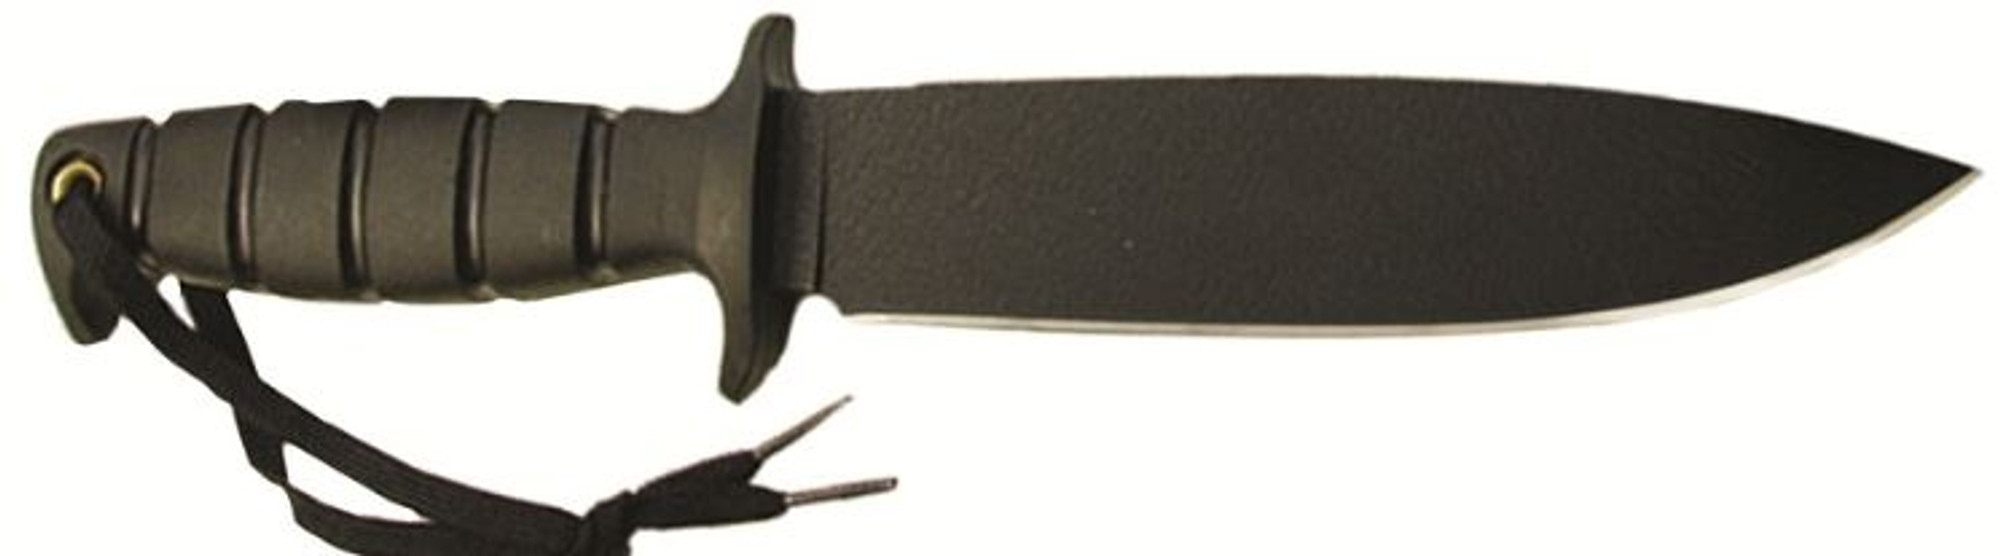 OKC 8543 Gen II SP43 Fixed Blade w/MOLLE Sheath